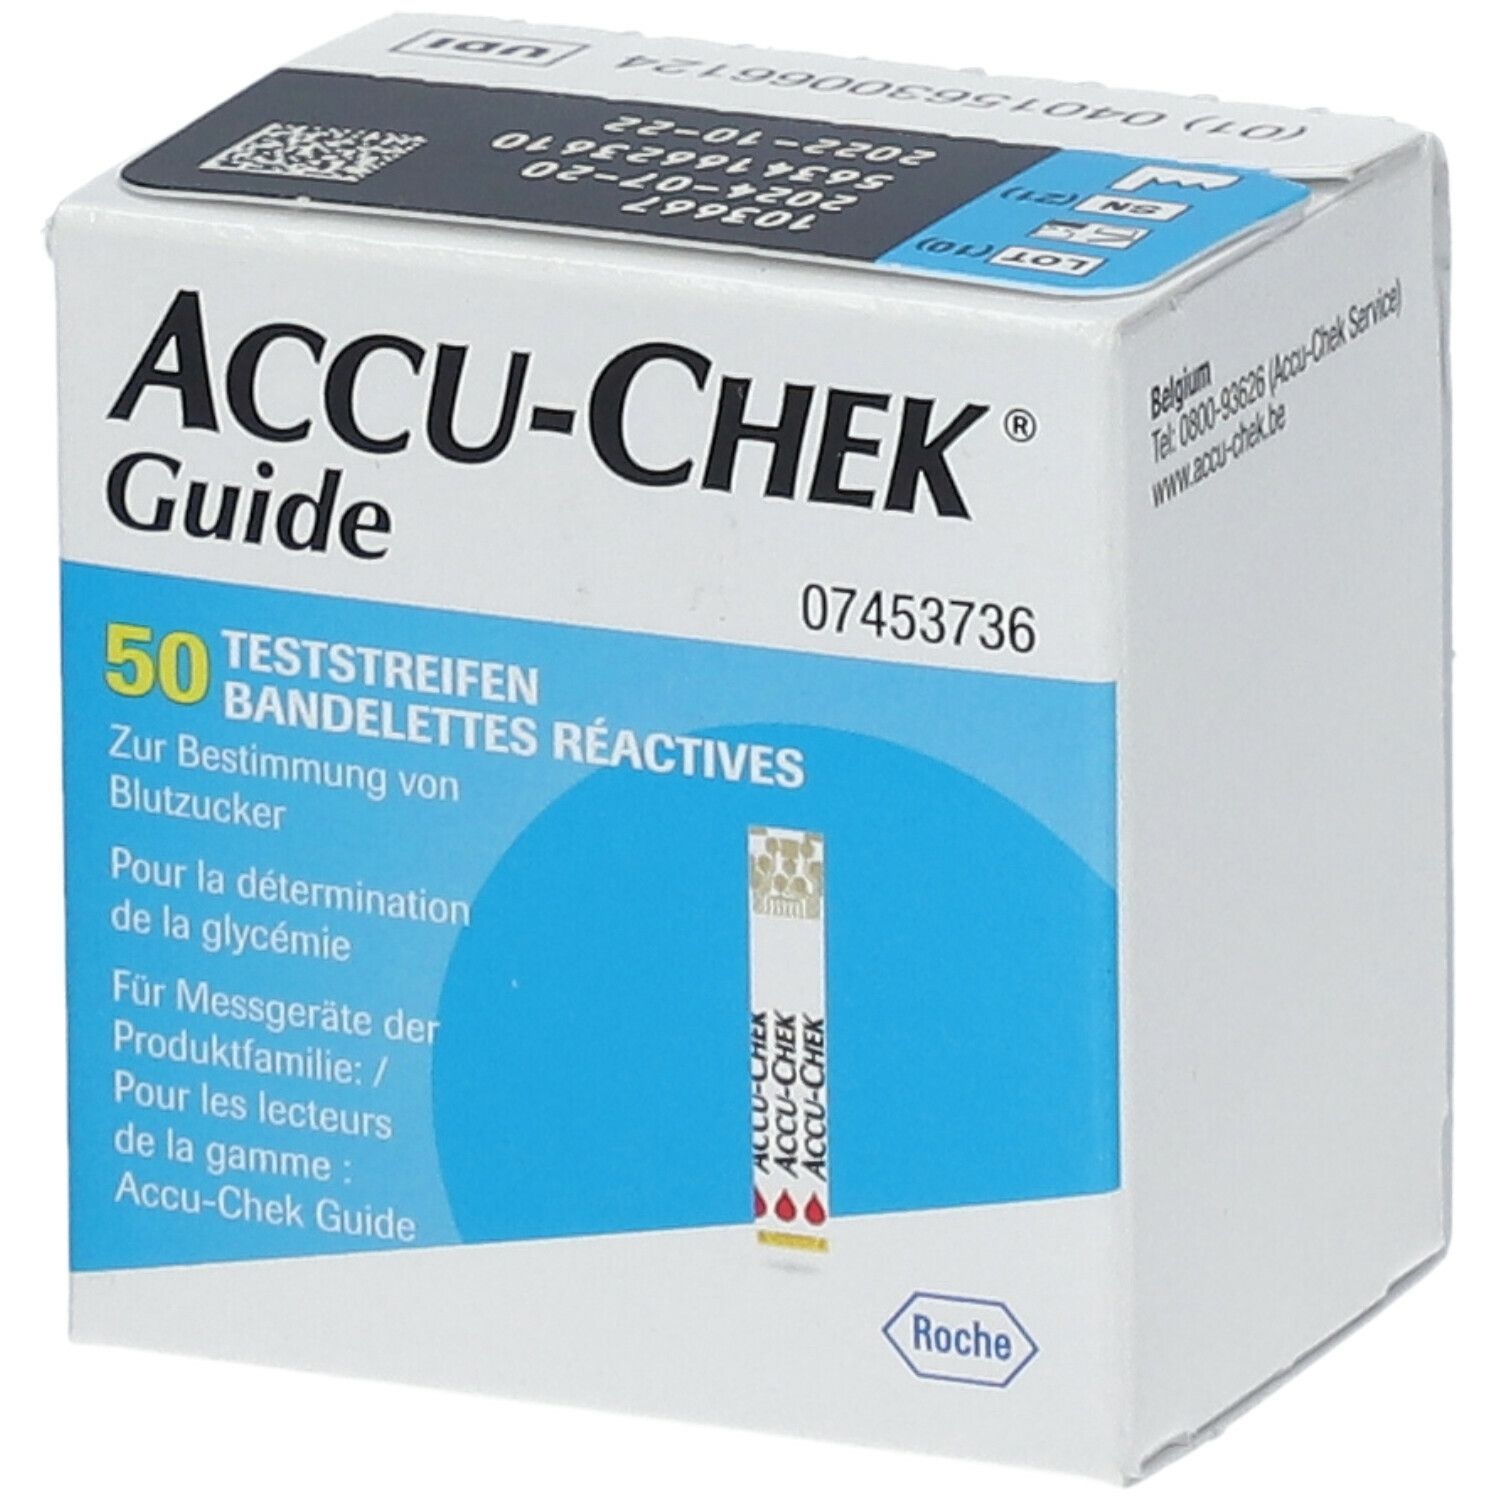 ACCU-CHEK® Guide Bandelettes réactives 50 pc(s) bande(s) de test